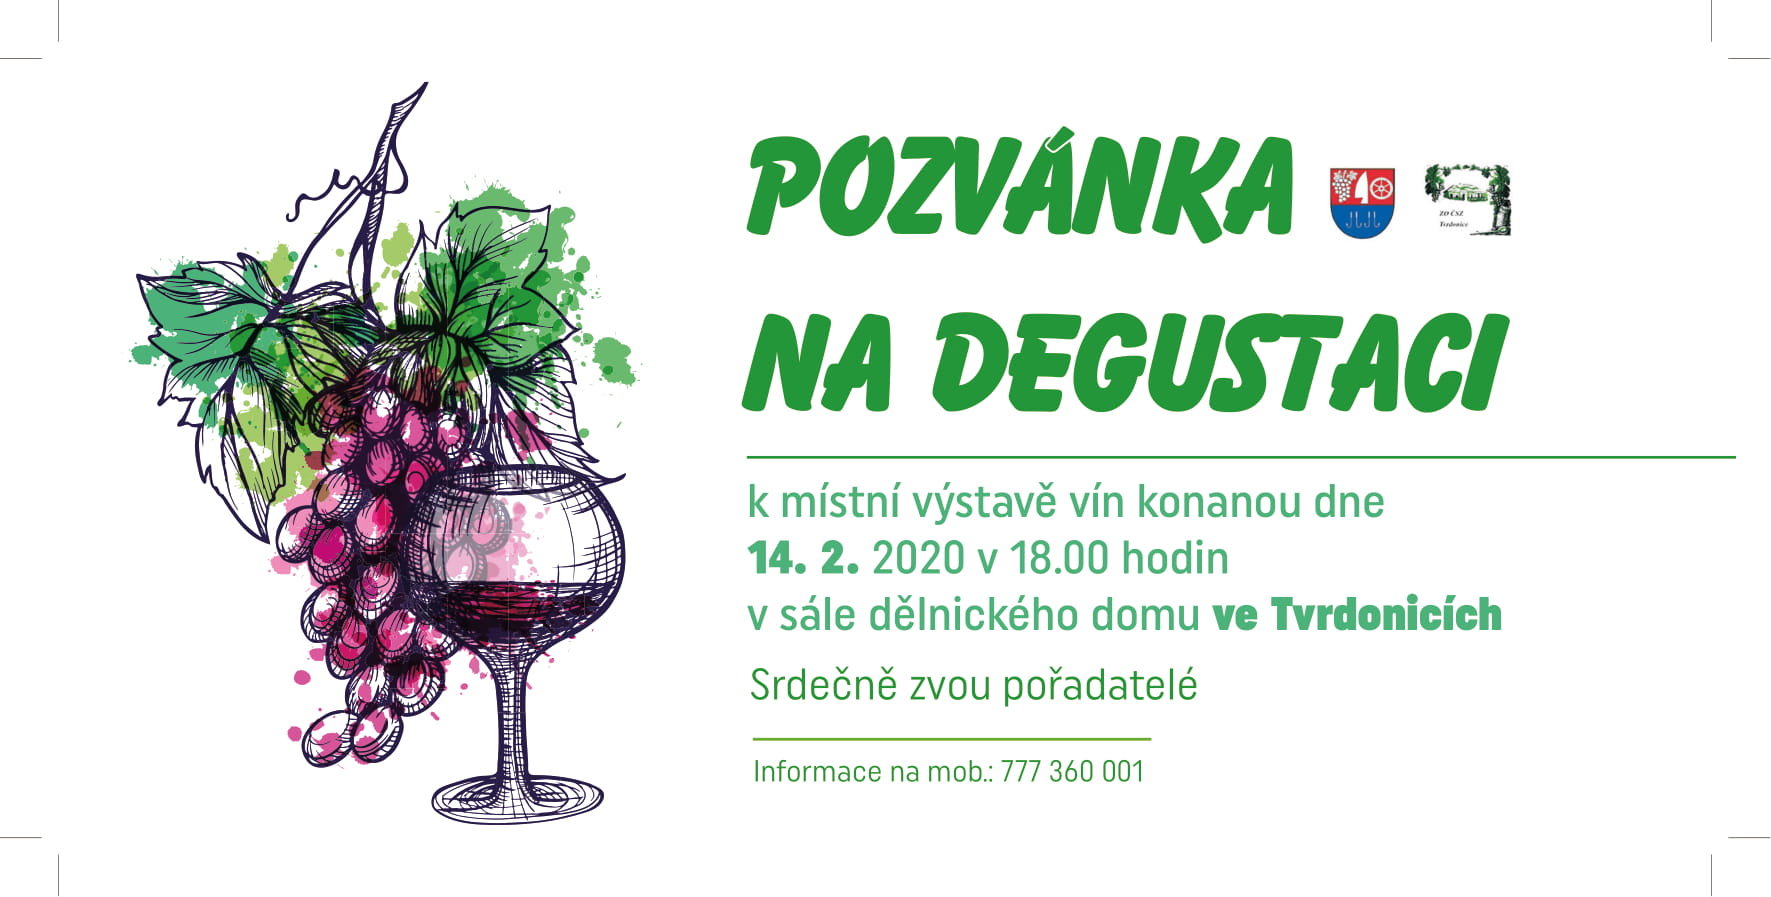 Vystava vin Tvrdonice degustace pozvanka DL 2020 1